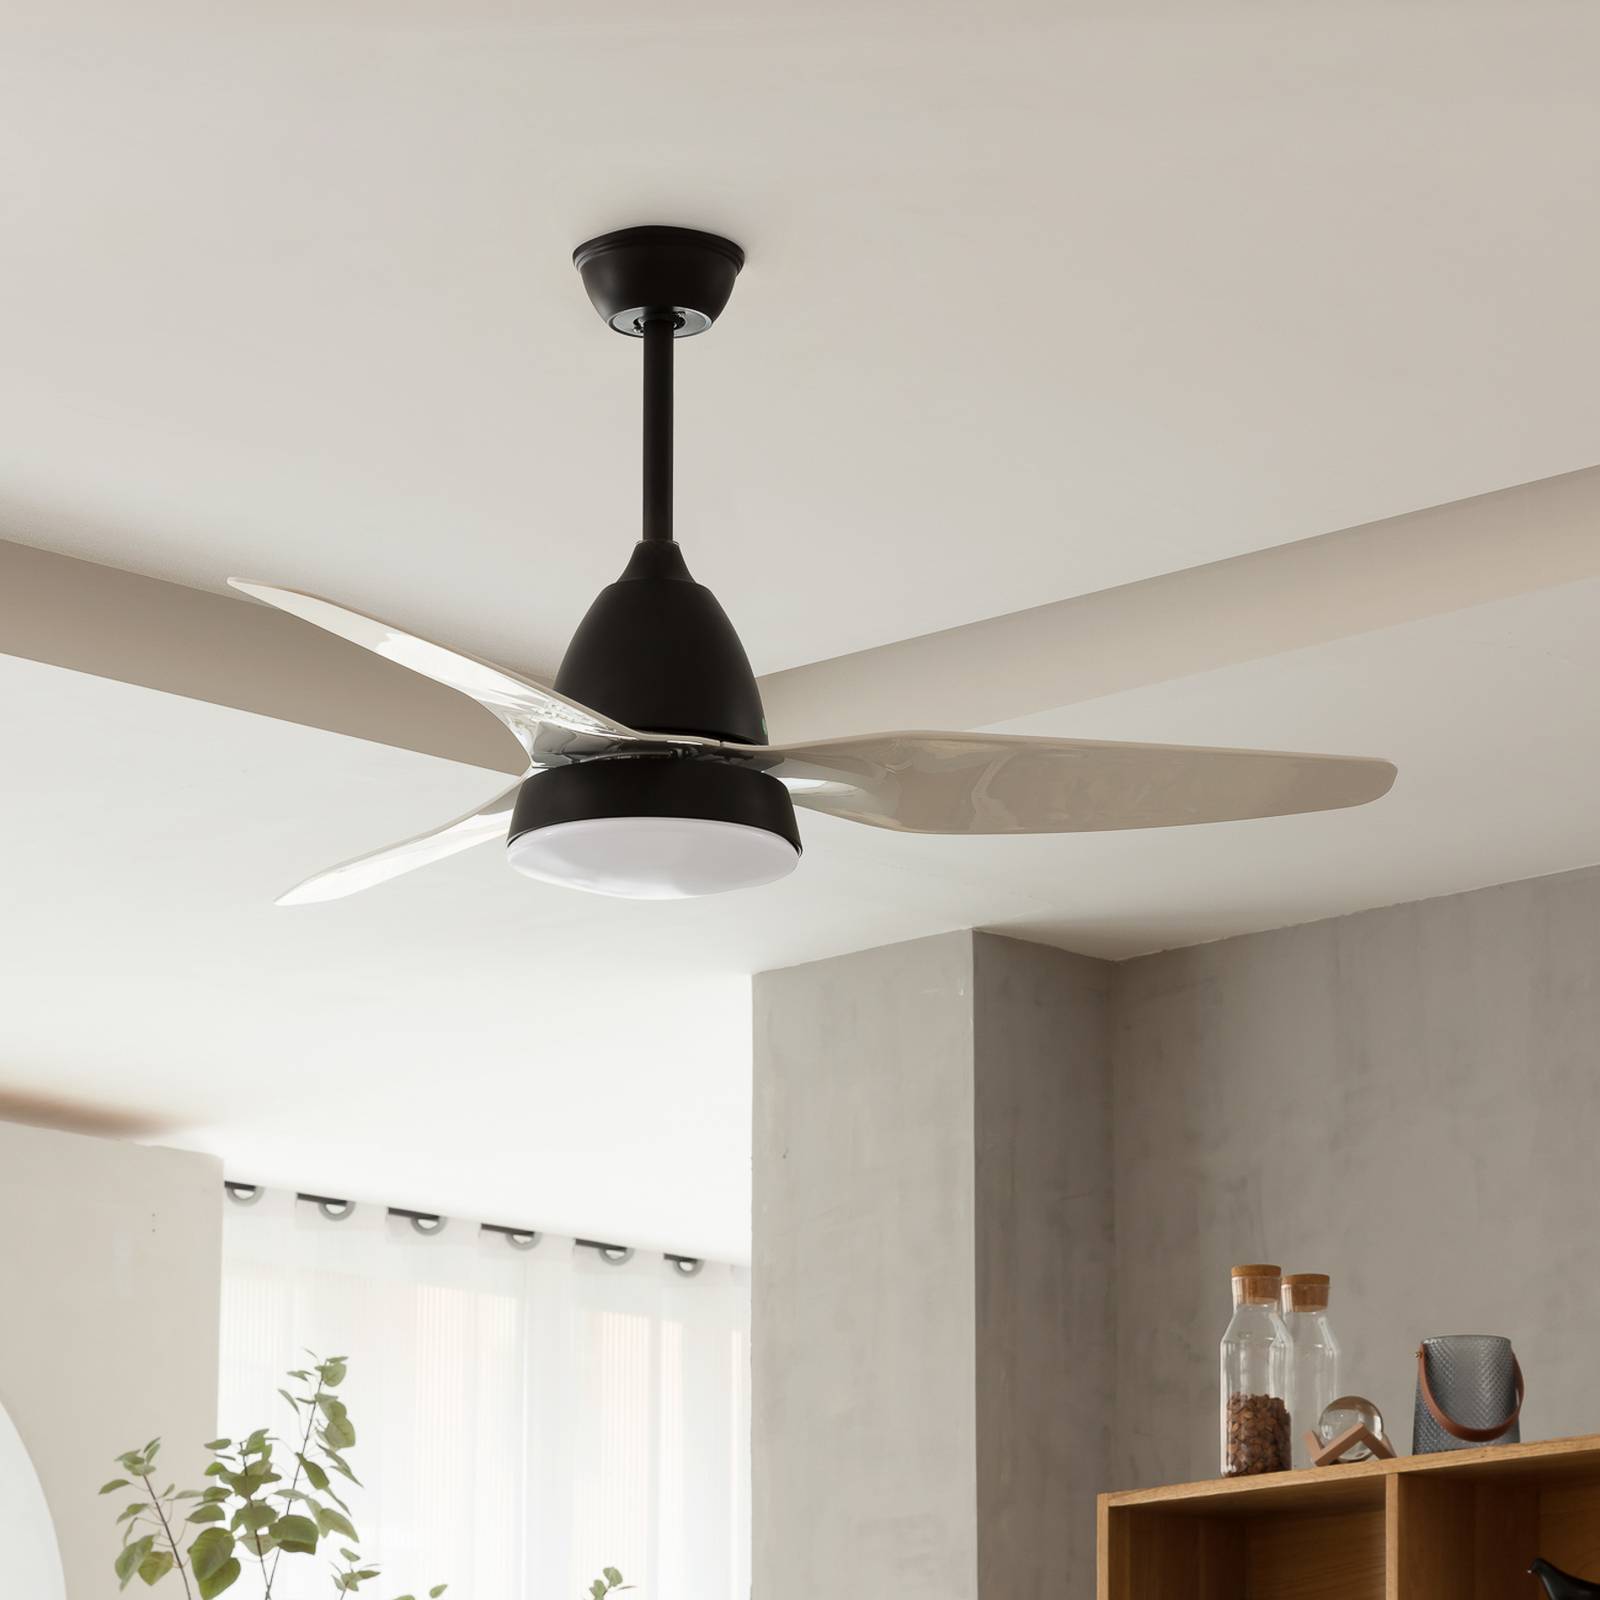 Image of Starluna Coriano ventilateur de plafond LED, noir 4251911746426